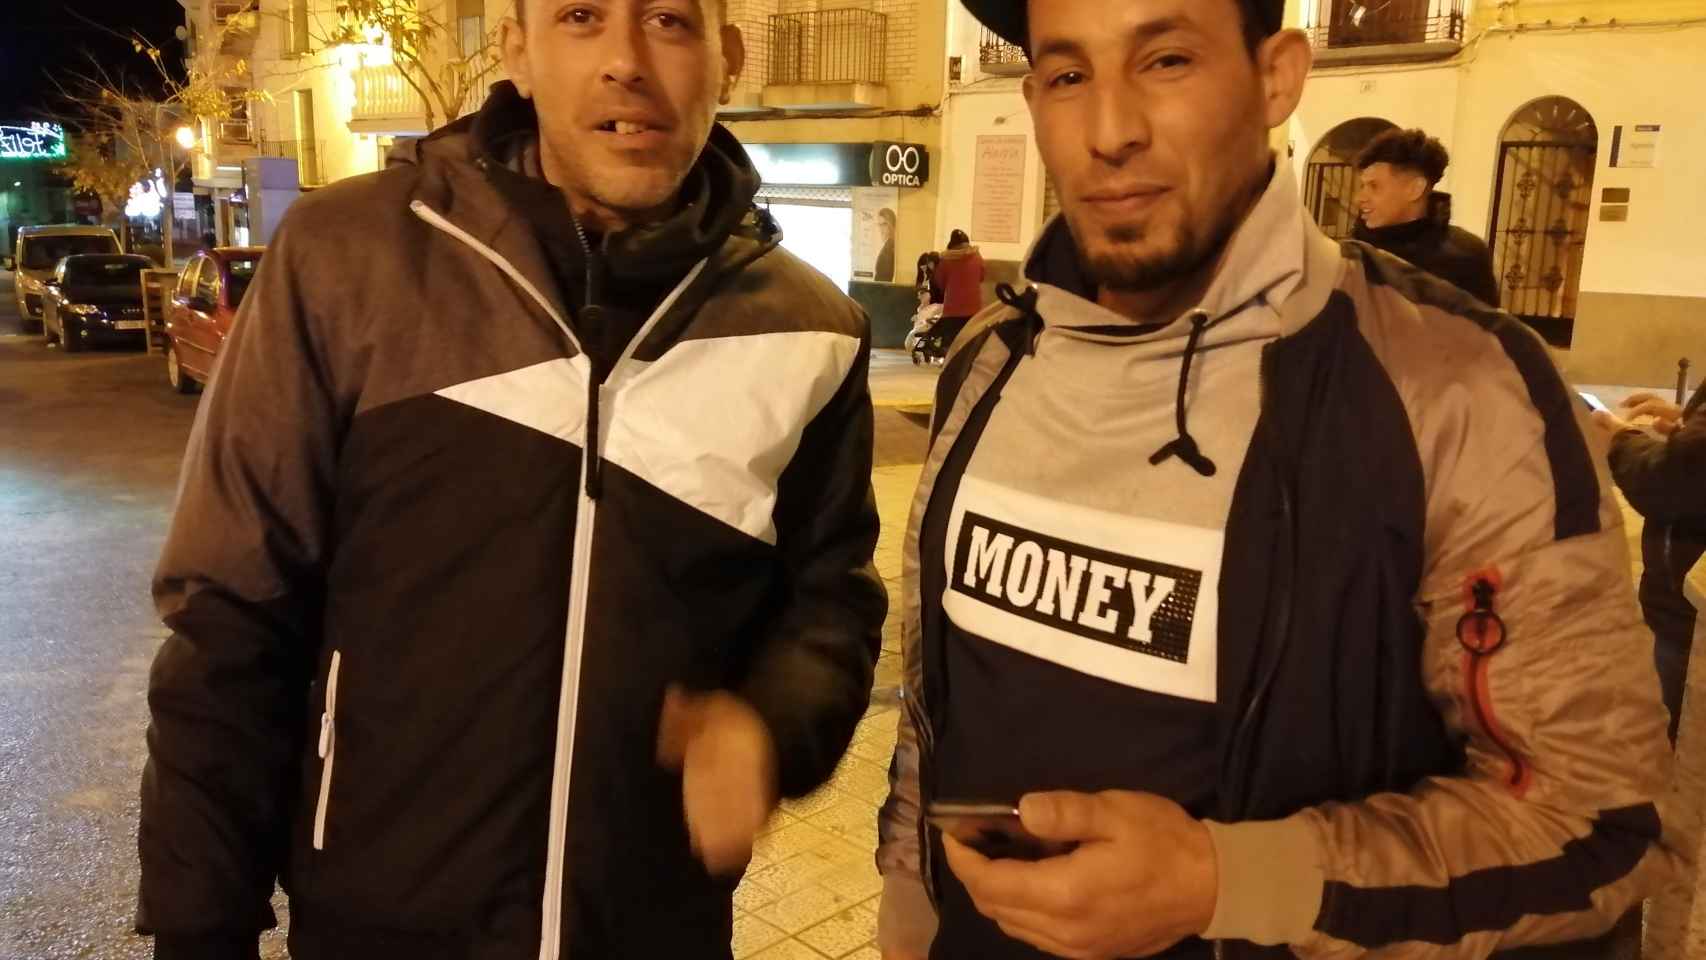 Los jornaleros argelinos Walid Ourak y Rabah Kheziret (derecha), de noche en Pozo Alcón tras su jornada laboral en la aceituna sin contrato.